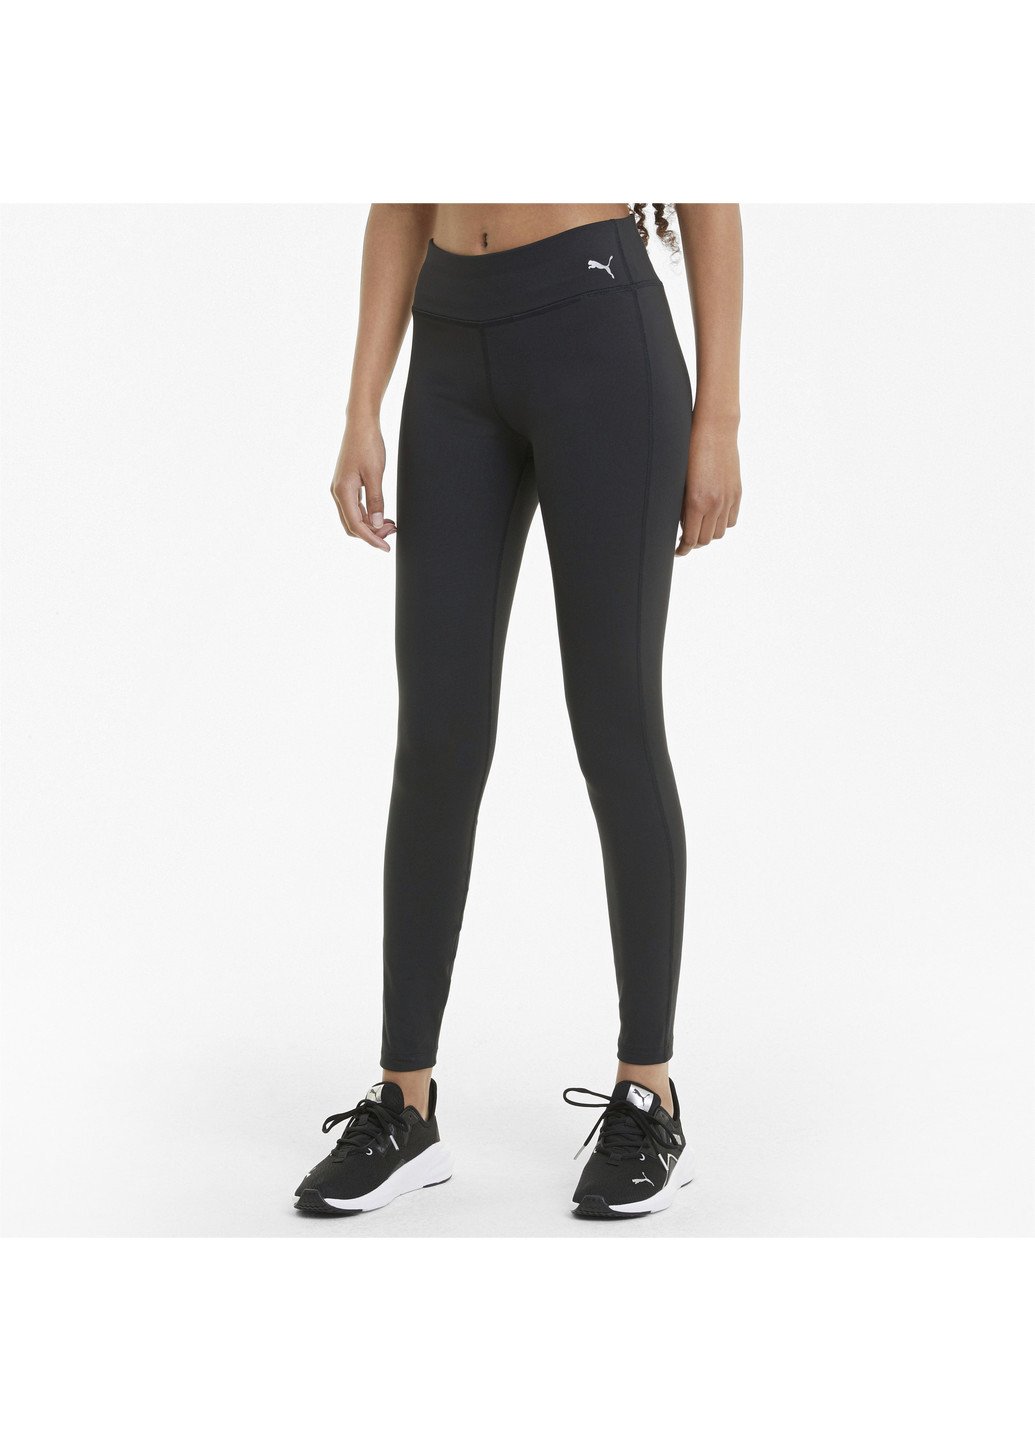 Черные летние легинсы performance full-length women's training leggings Puma